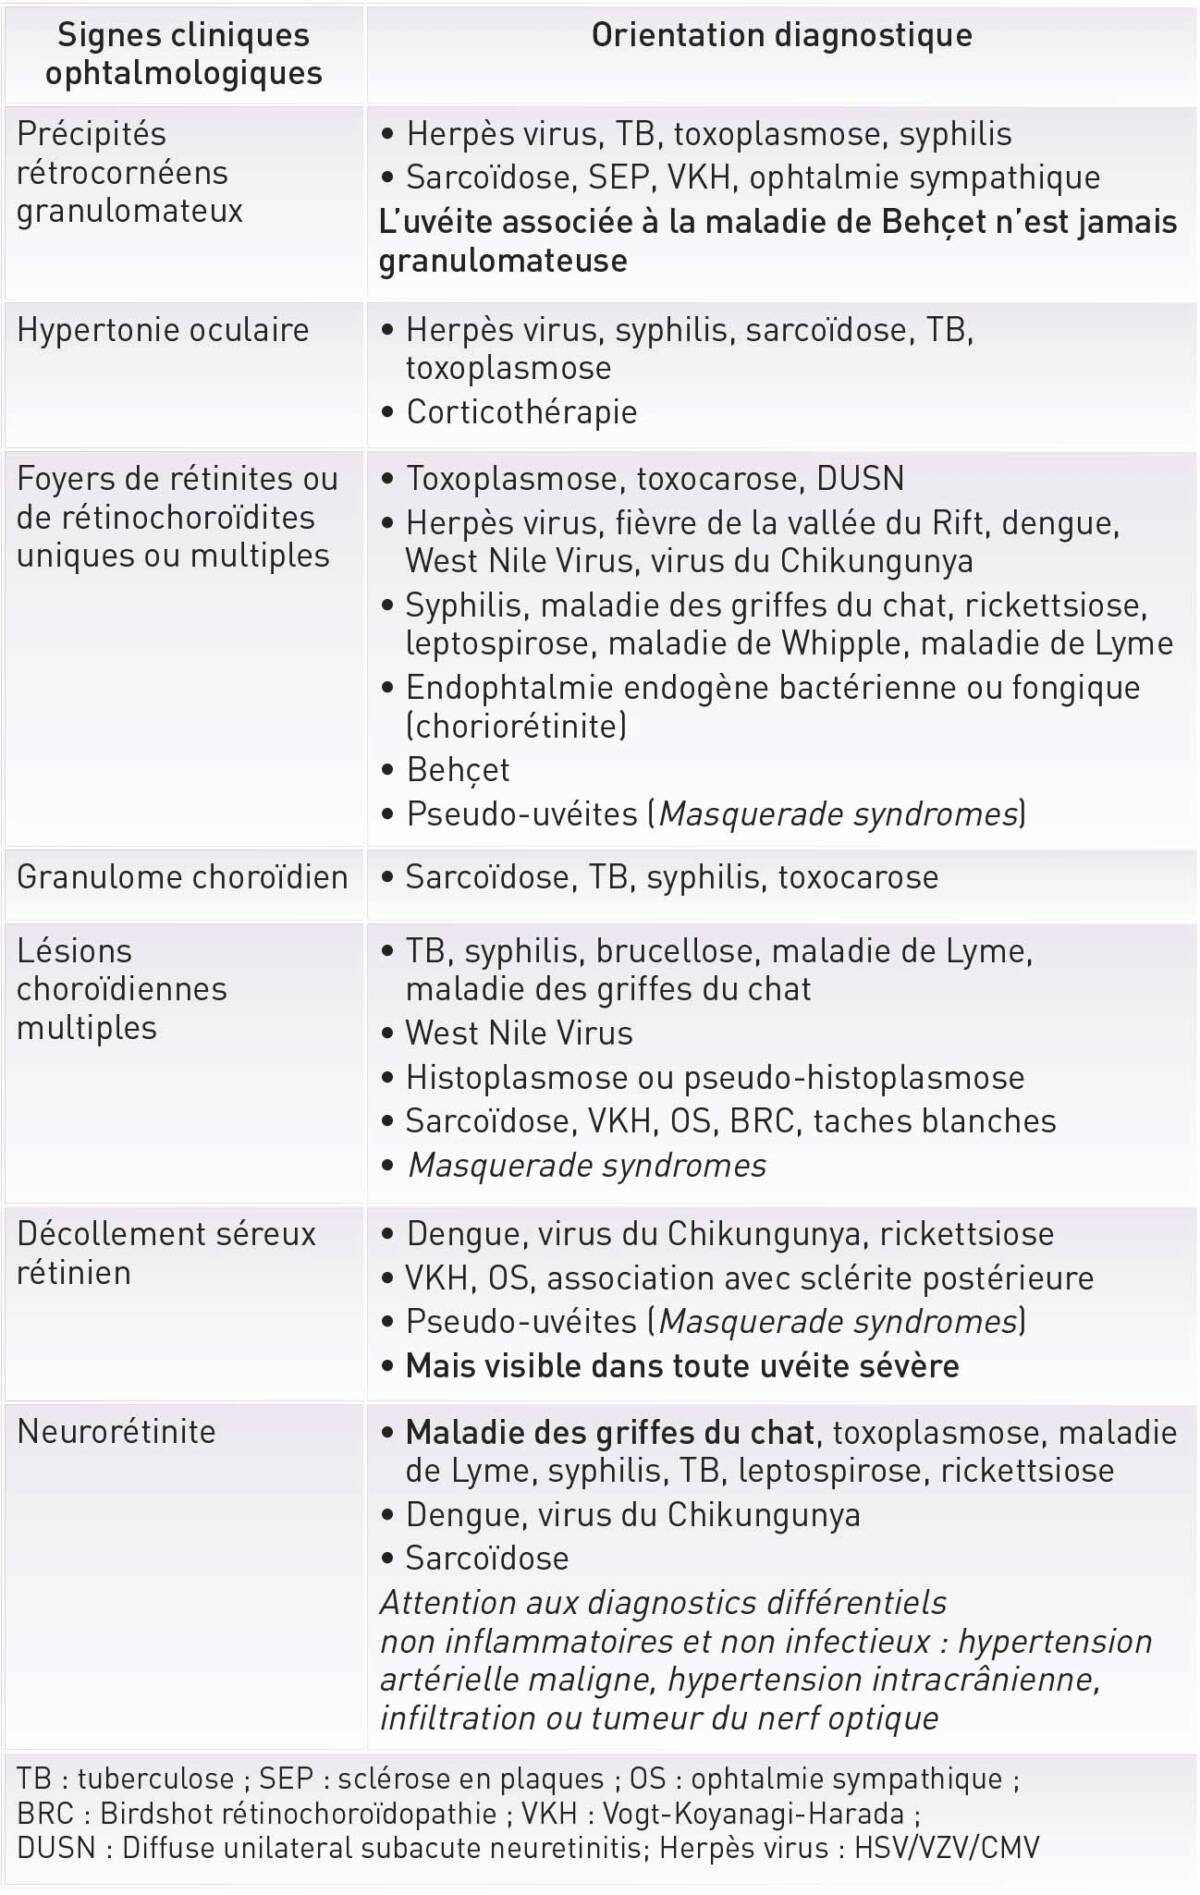 Tableau I. Principaux diagnostics à évoquer en fonction du tableau clinique d’uvéite postérieure.
